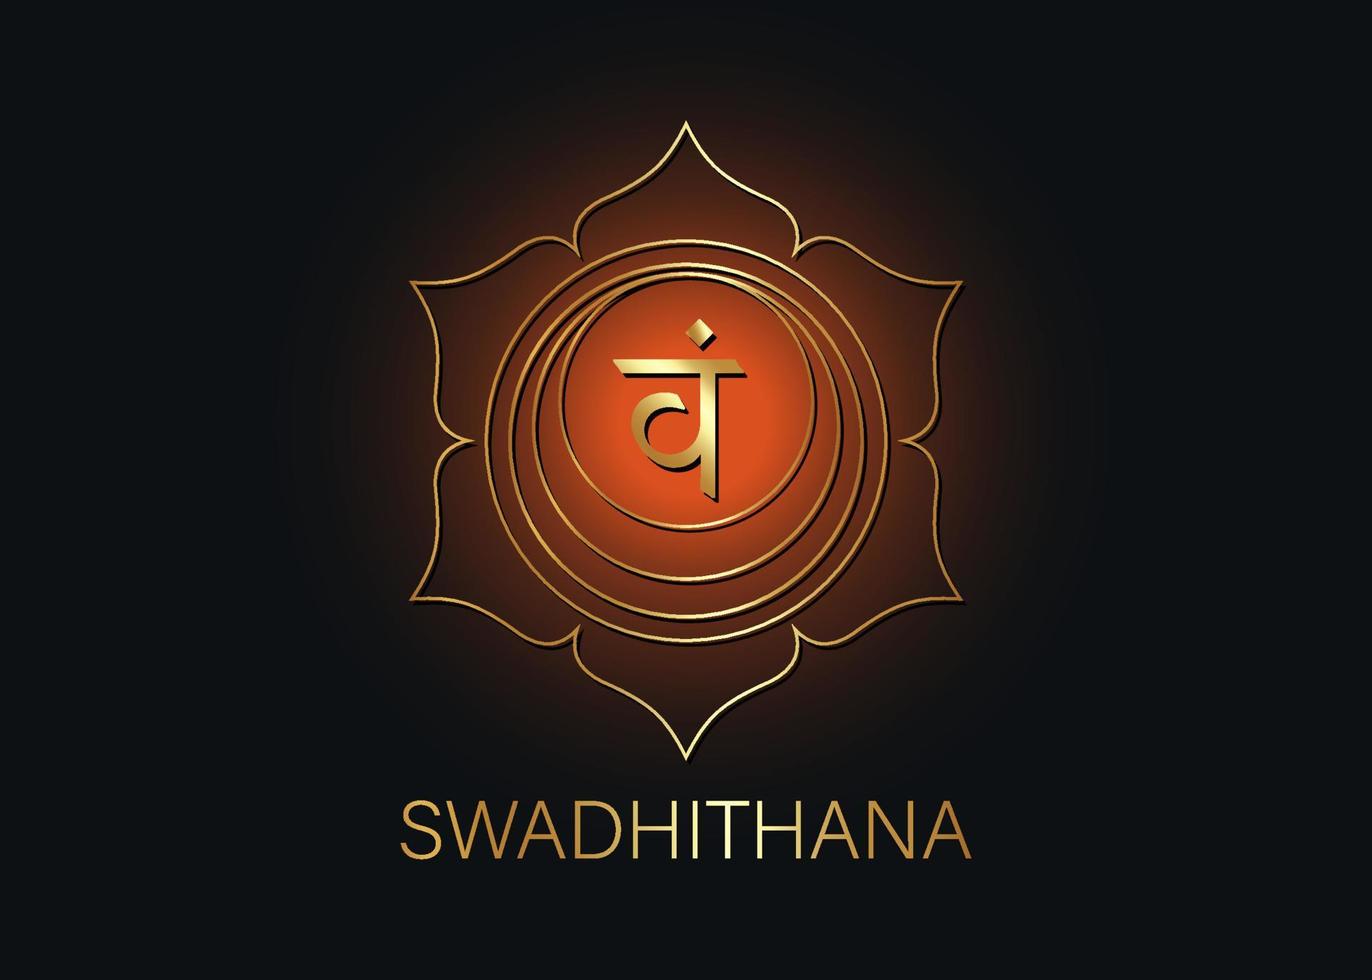 segundo chakra swadhisthana con el mantra semilla sánscrito hindú vam. símbolo de estilo de diseño plano naranja y dorado para meditación, yoga. vector de plantilla de logotipo aislado sobre fondo negro